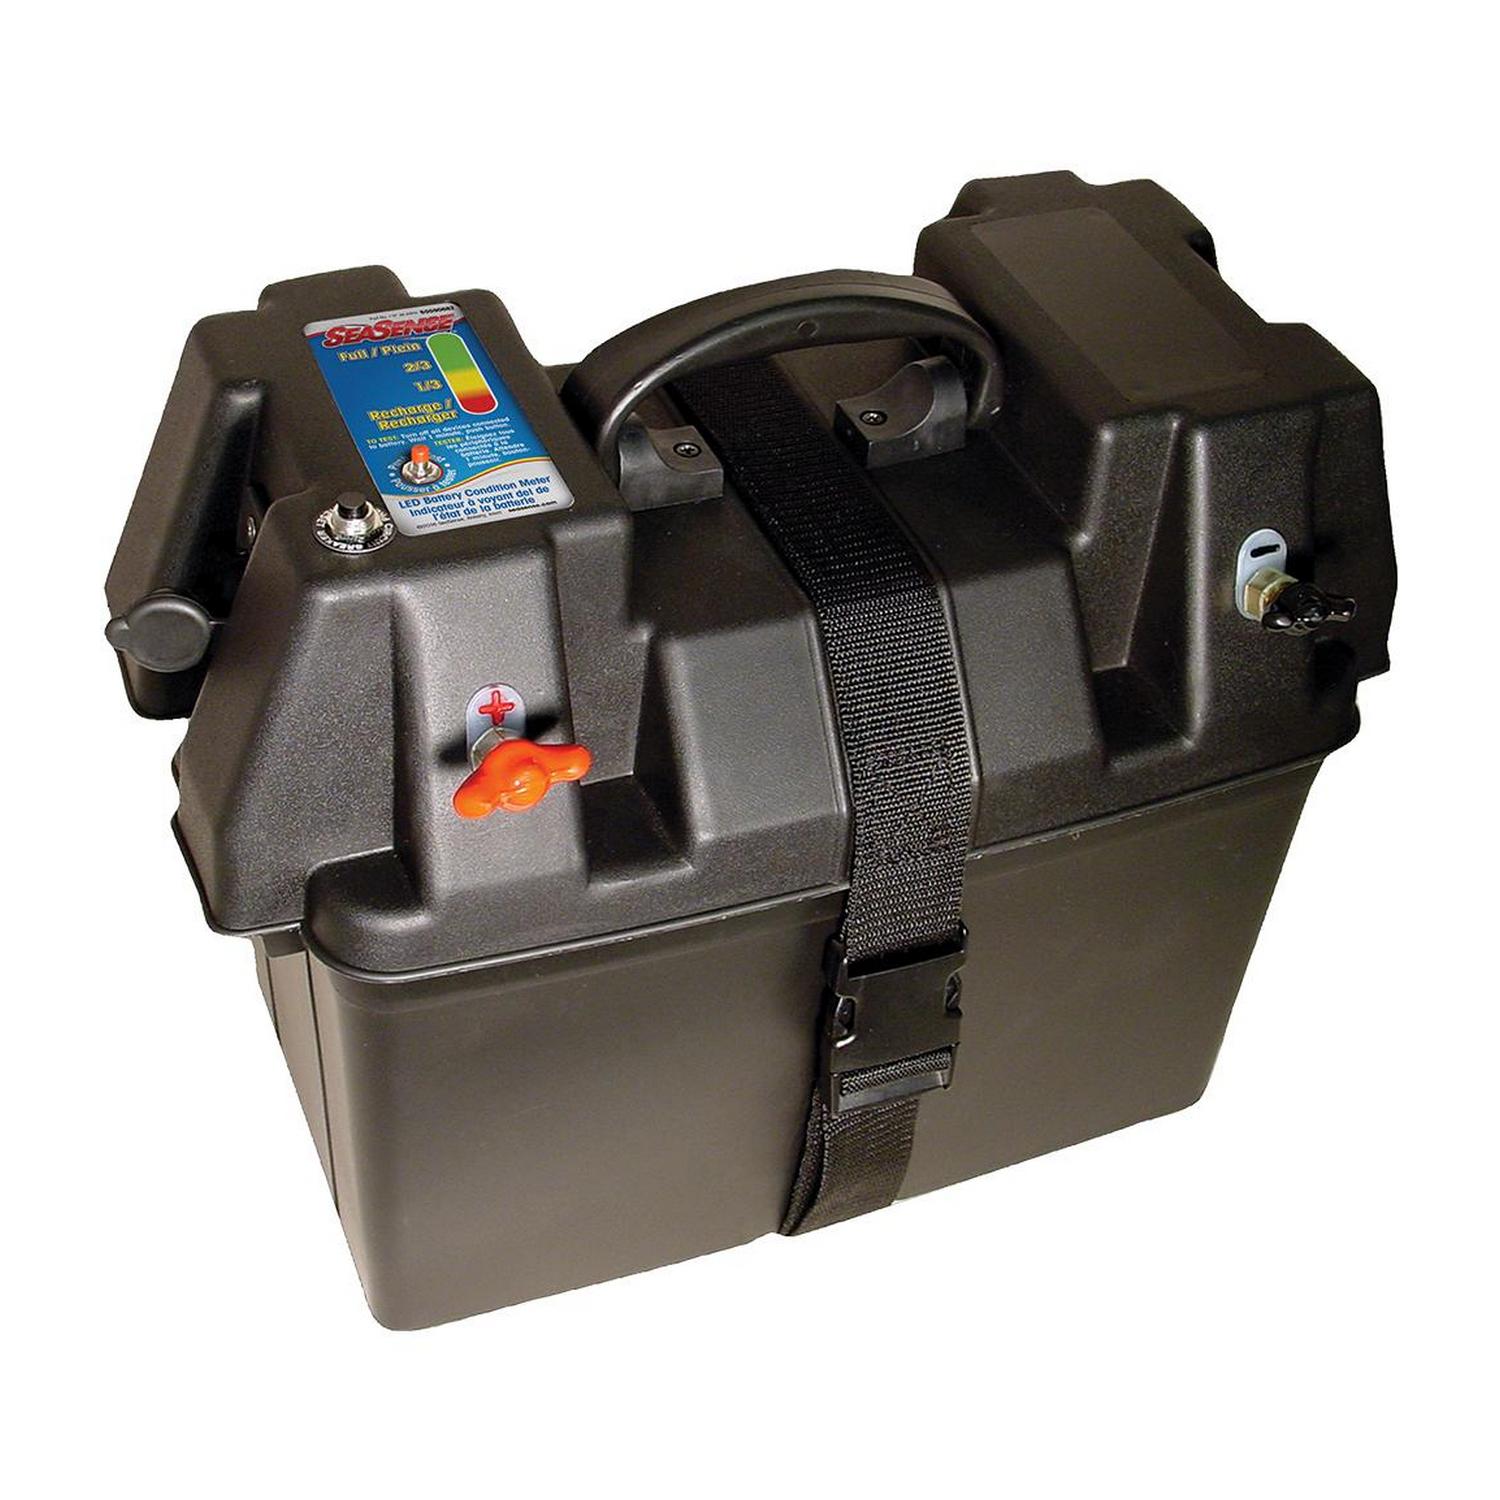 Аккумуляторный ящик/бокс с гнездом прикуривателя и индикатором заряда SeaSense 50090682 33 x 19 x 20 см